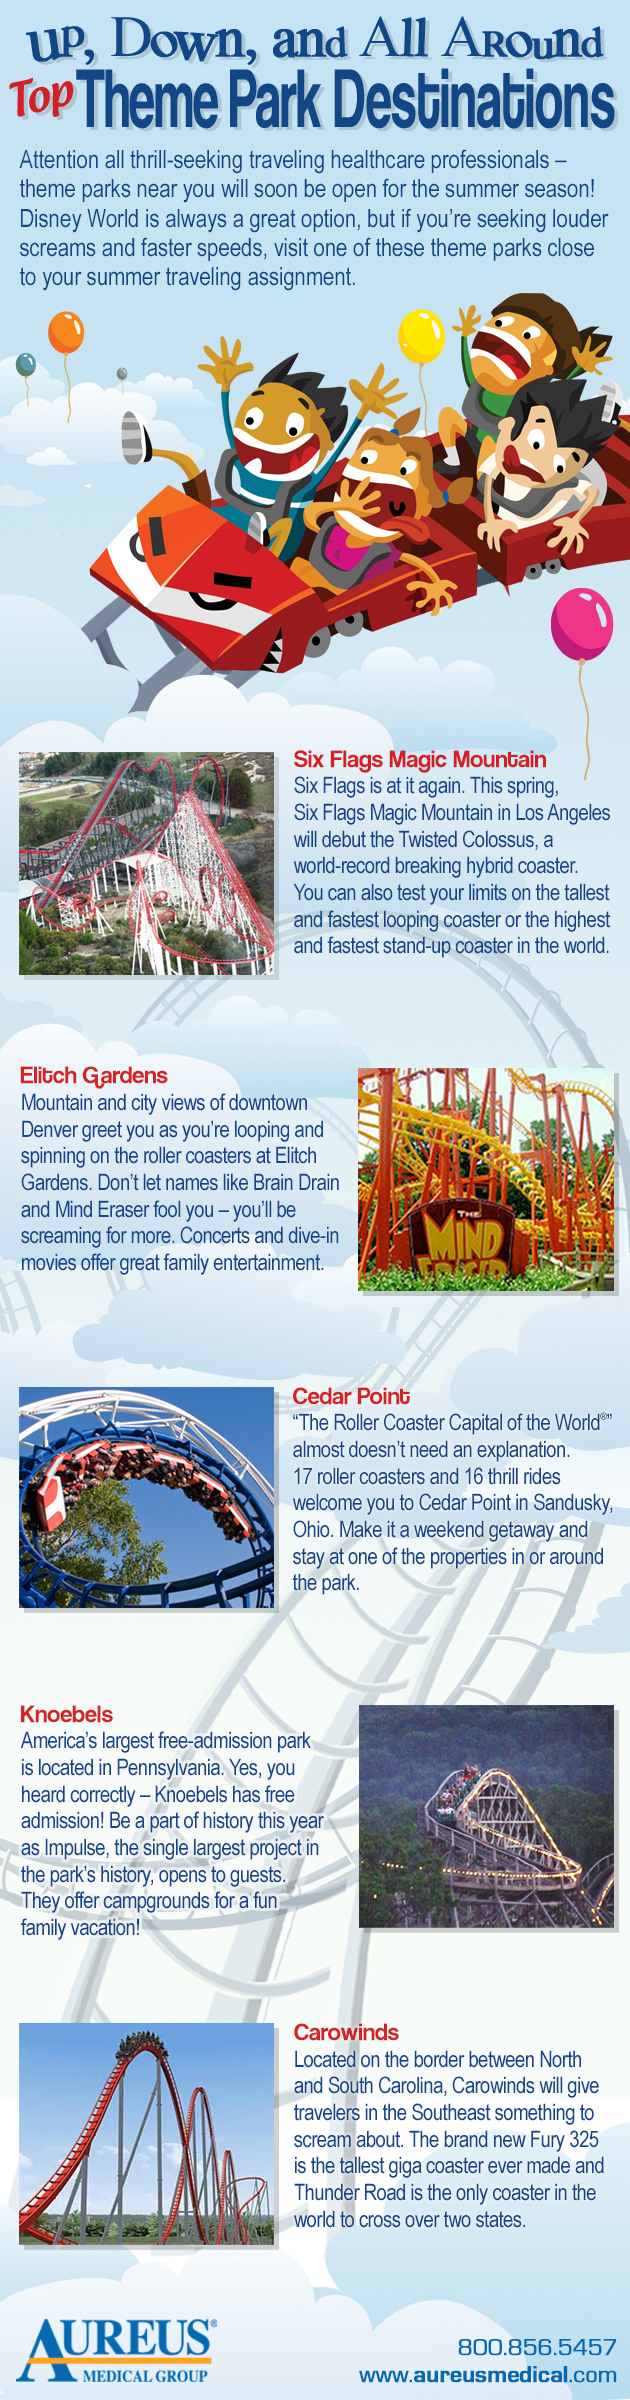 Top Theme Park Destinations